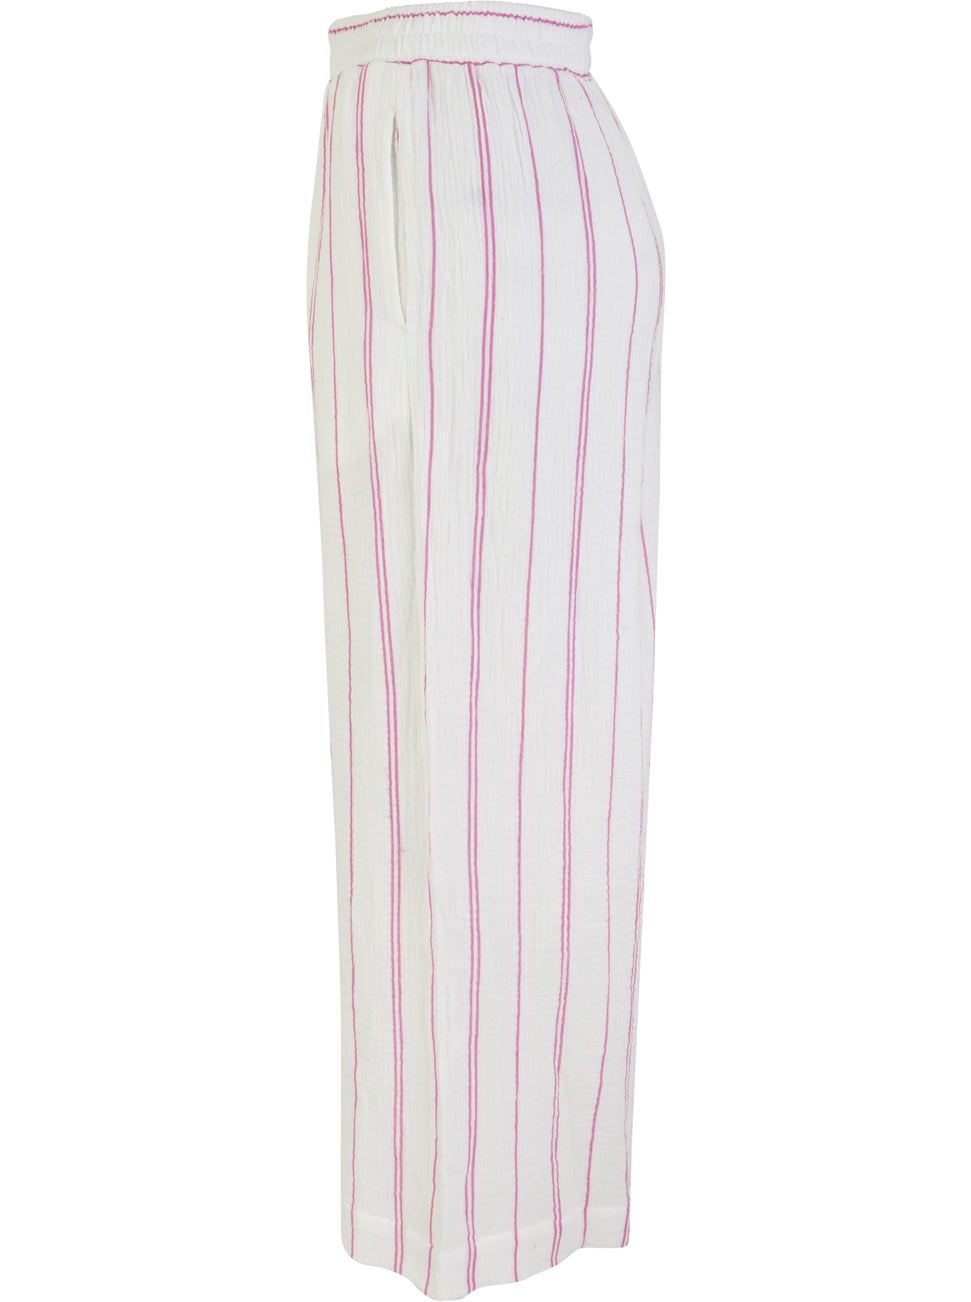 Women's Muslin Pant in Pink Stripe